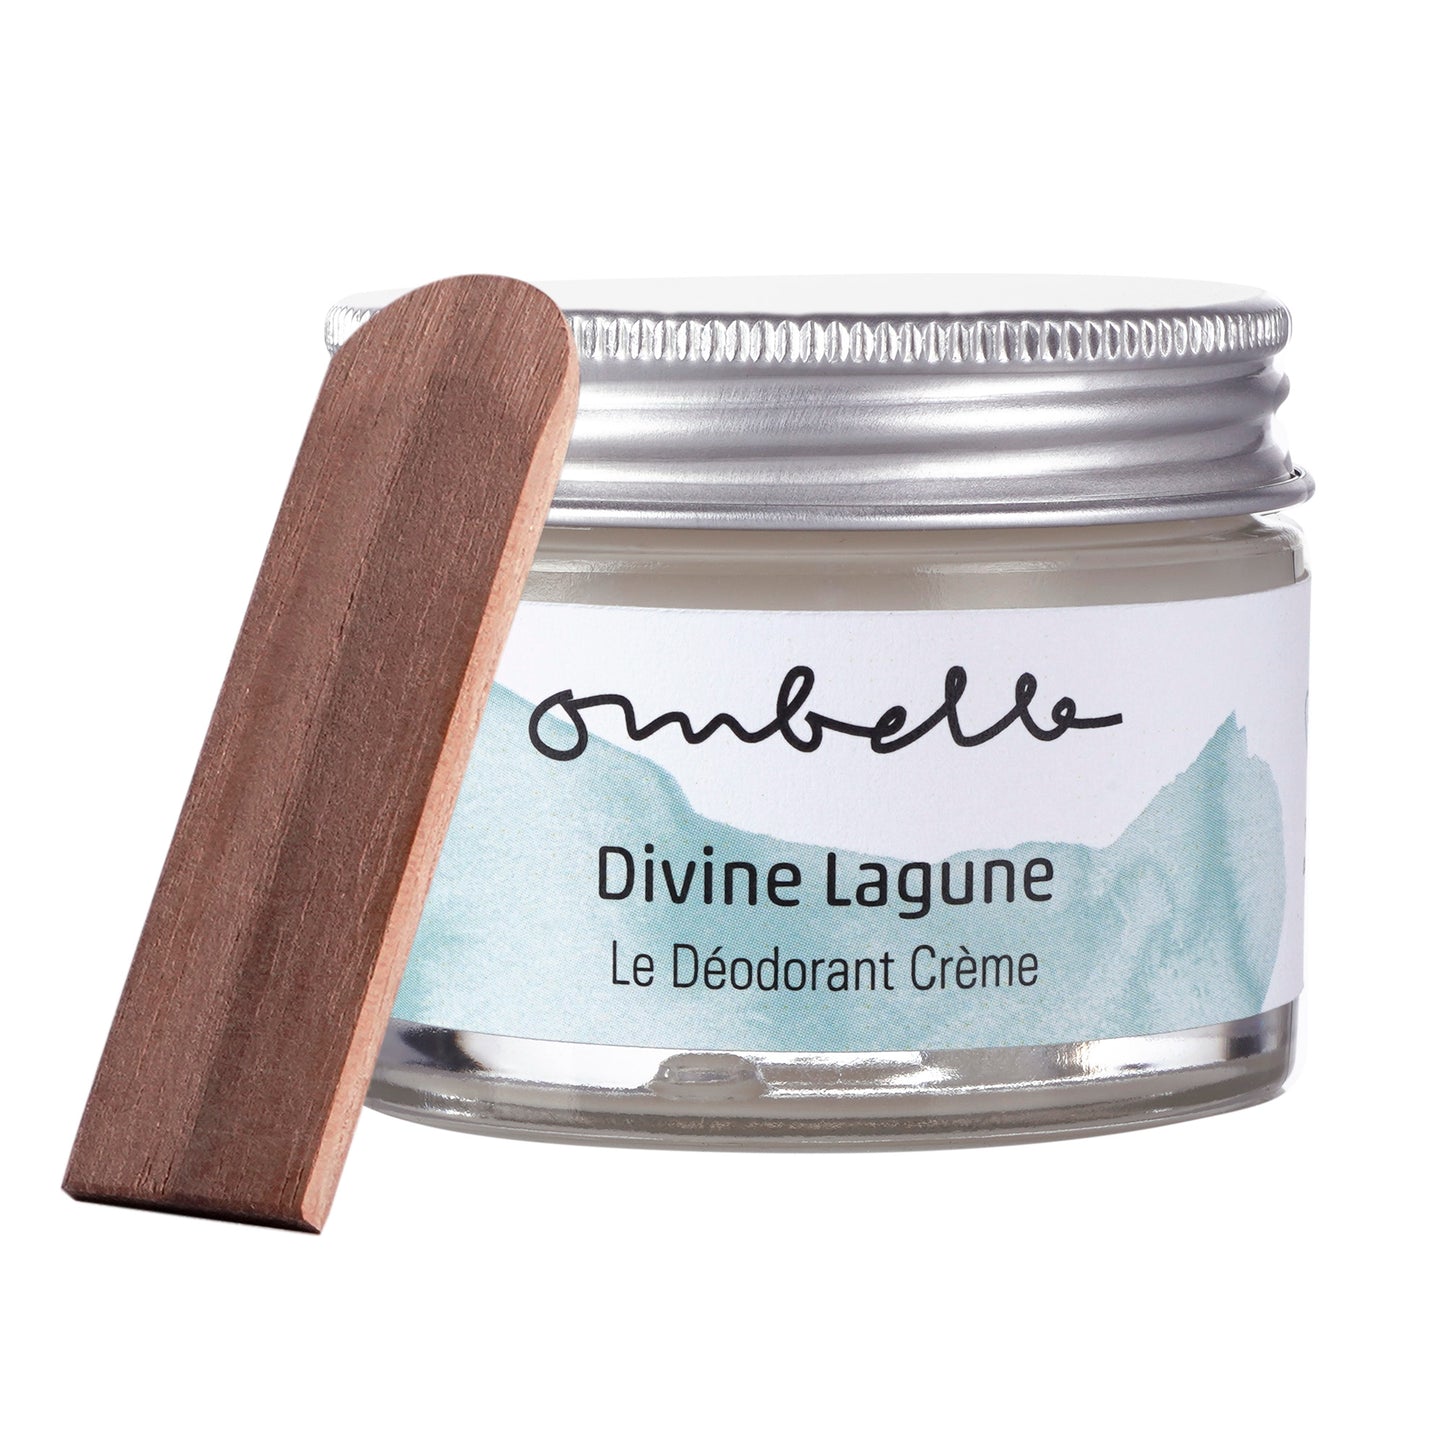 Ombelle Divine Lagune 35g Bio Creme Deo im Glastiegel mit Metalldeckel Shea Butter unraffiniert Fair Trade ohne Aluminiumsalze. 